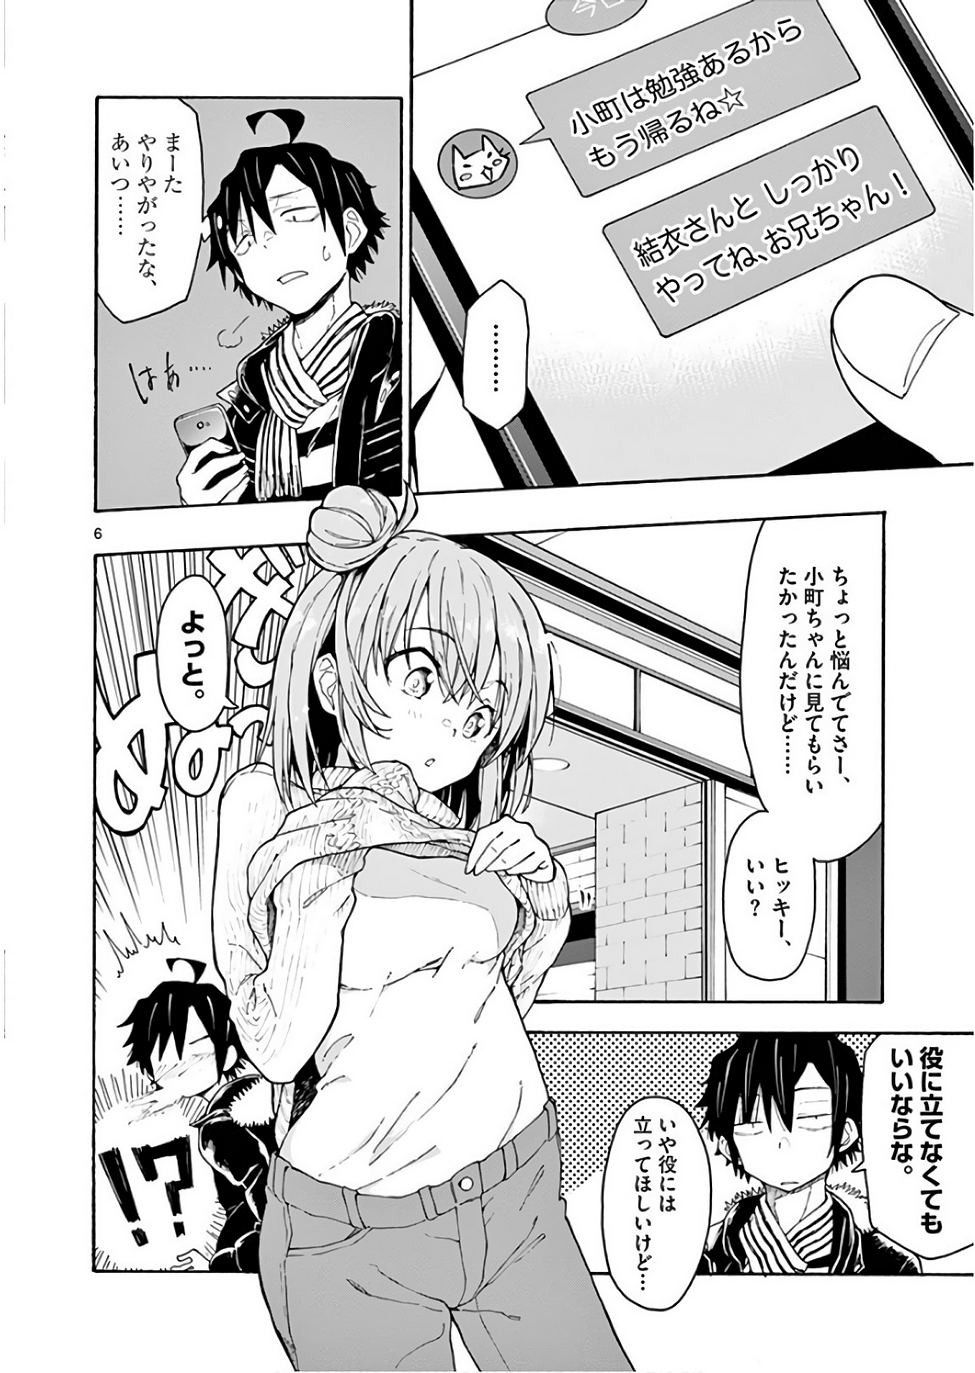 Yahari Ore no Seishun Rabukome wa Machigatte Iru. @ Comic - Chapter 74 - Page 6